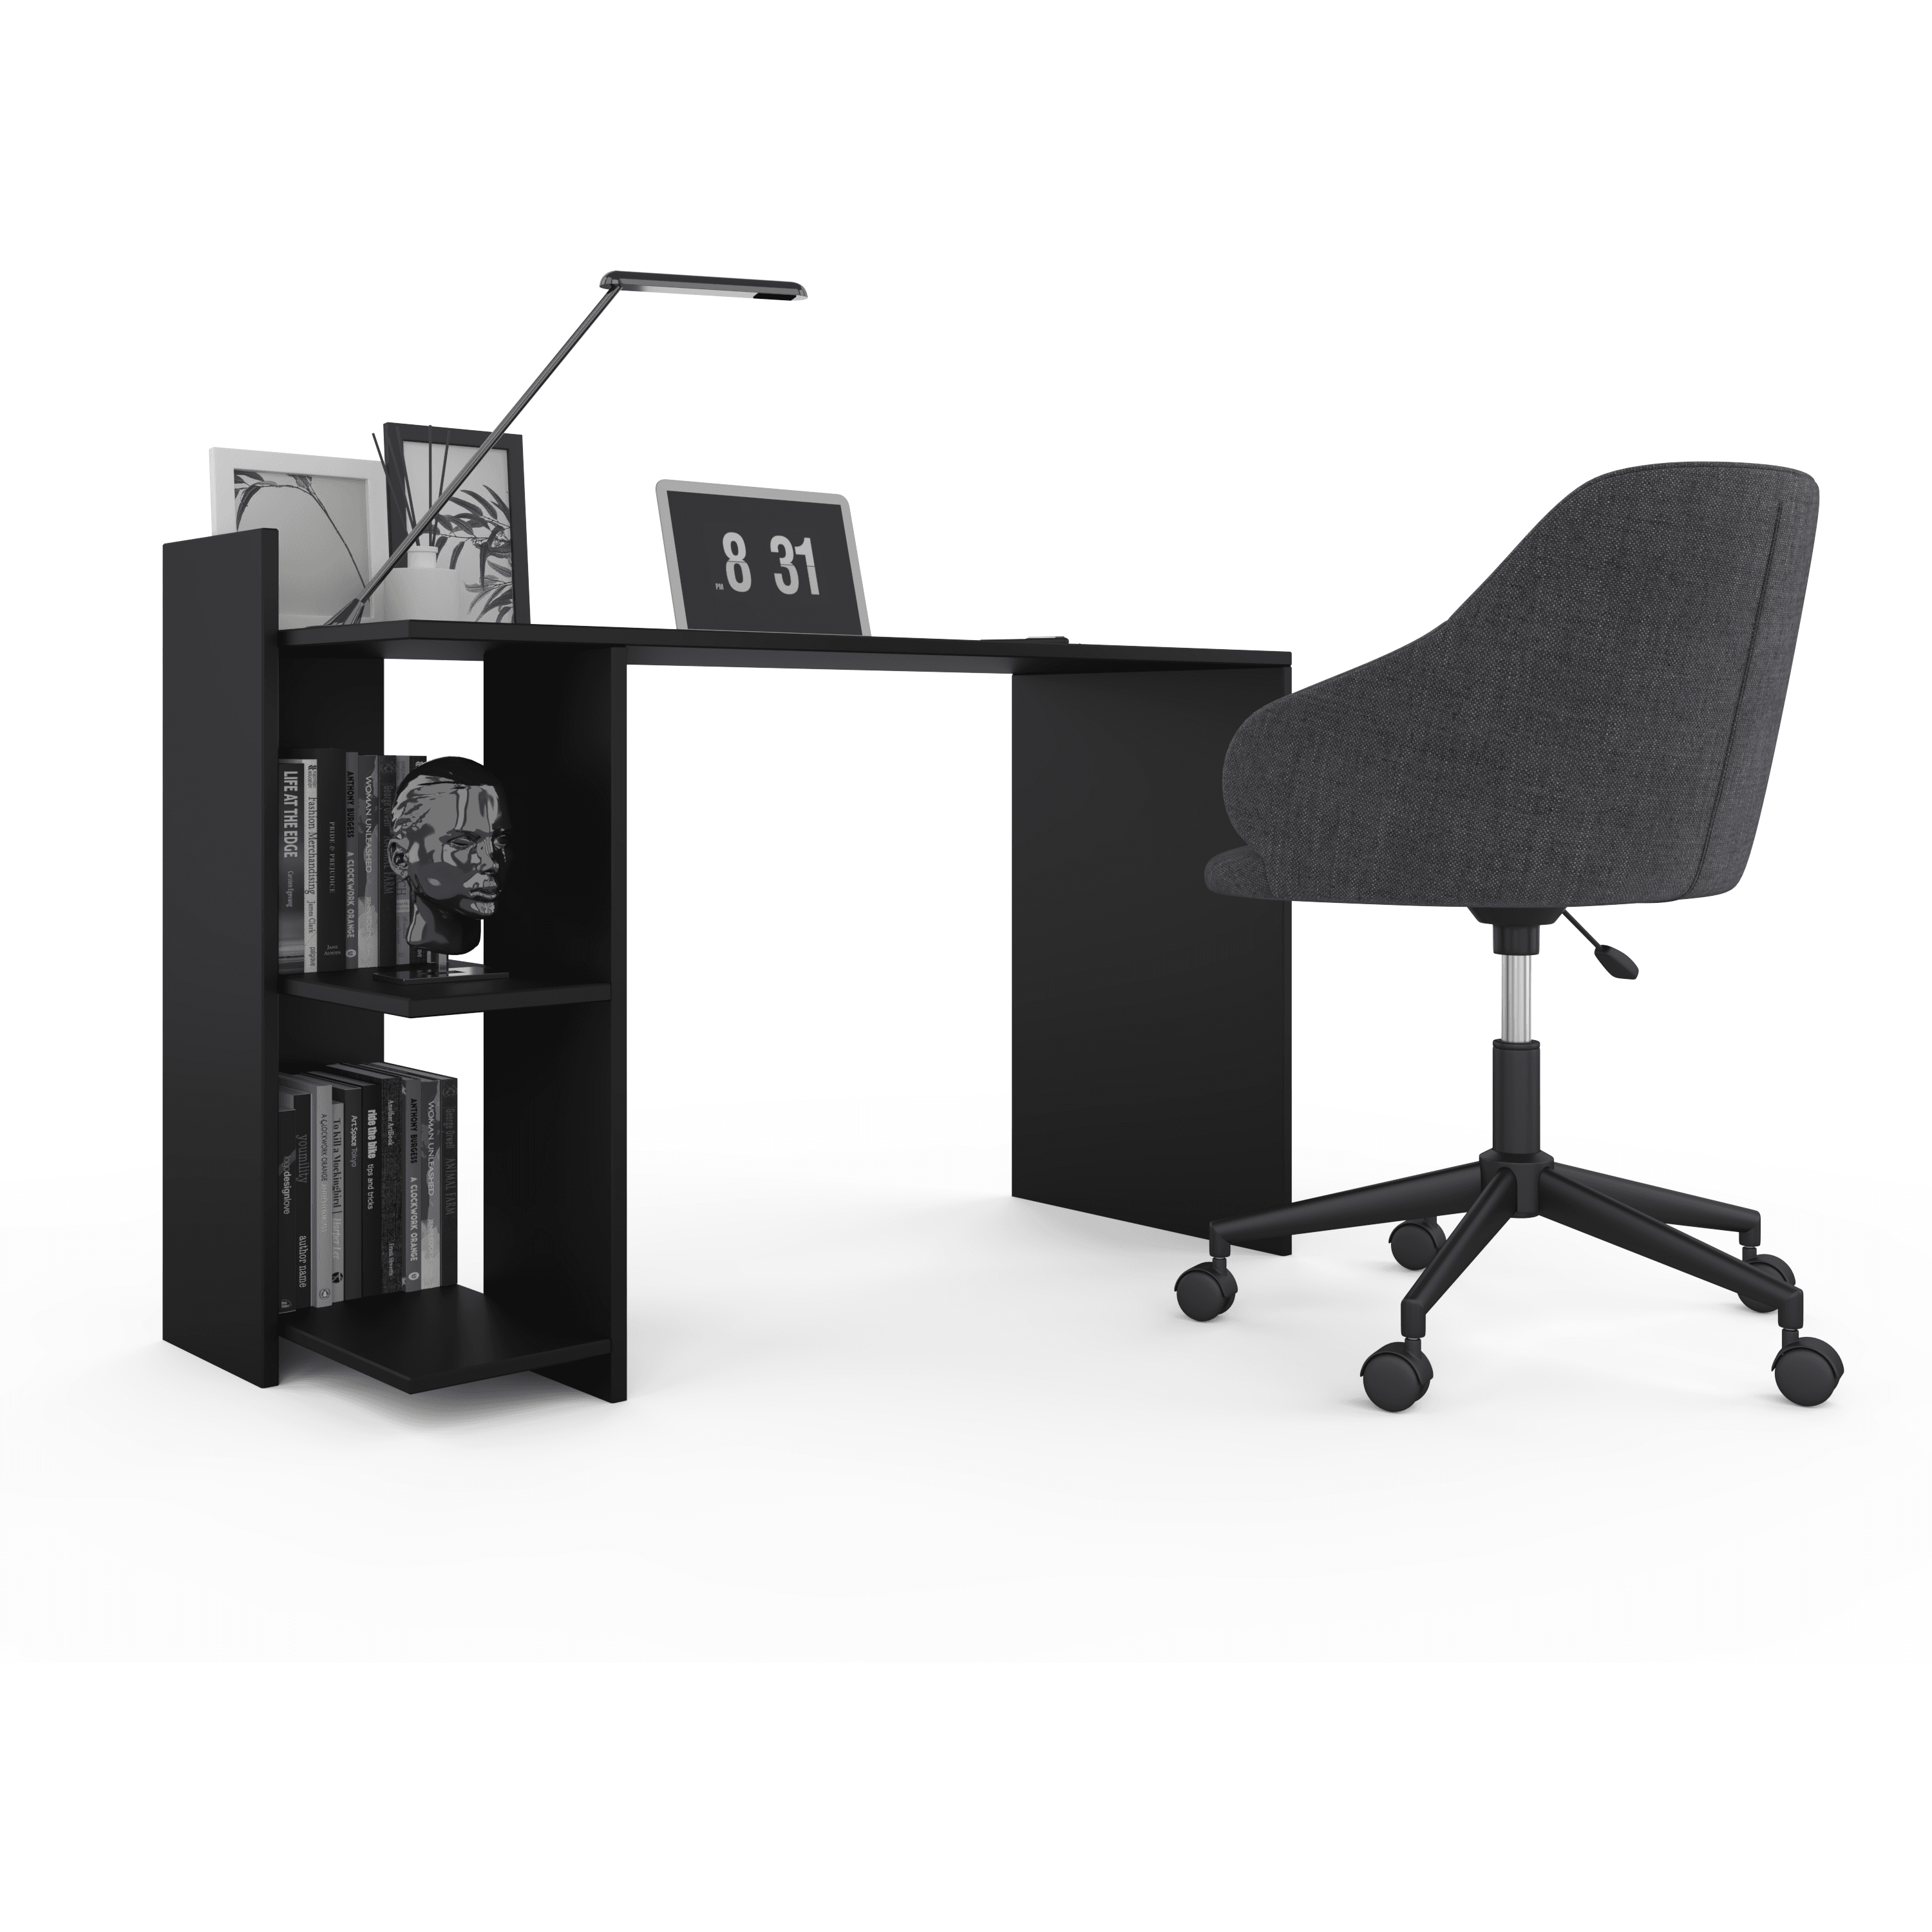 Malta Office Table - Black